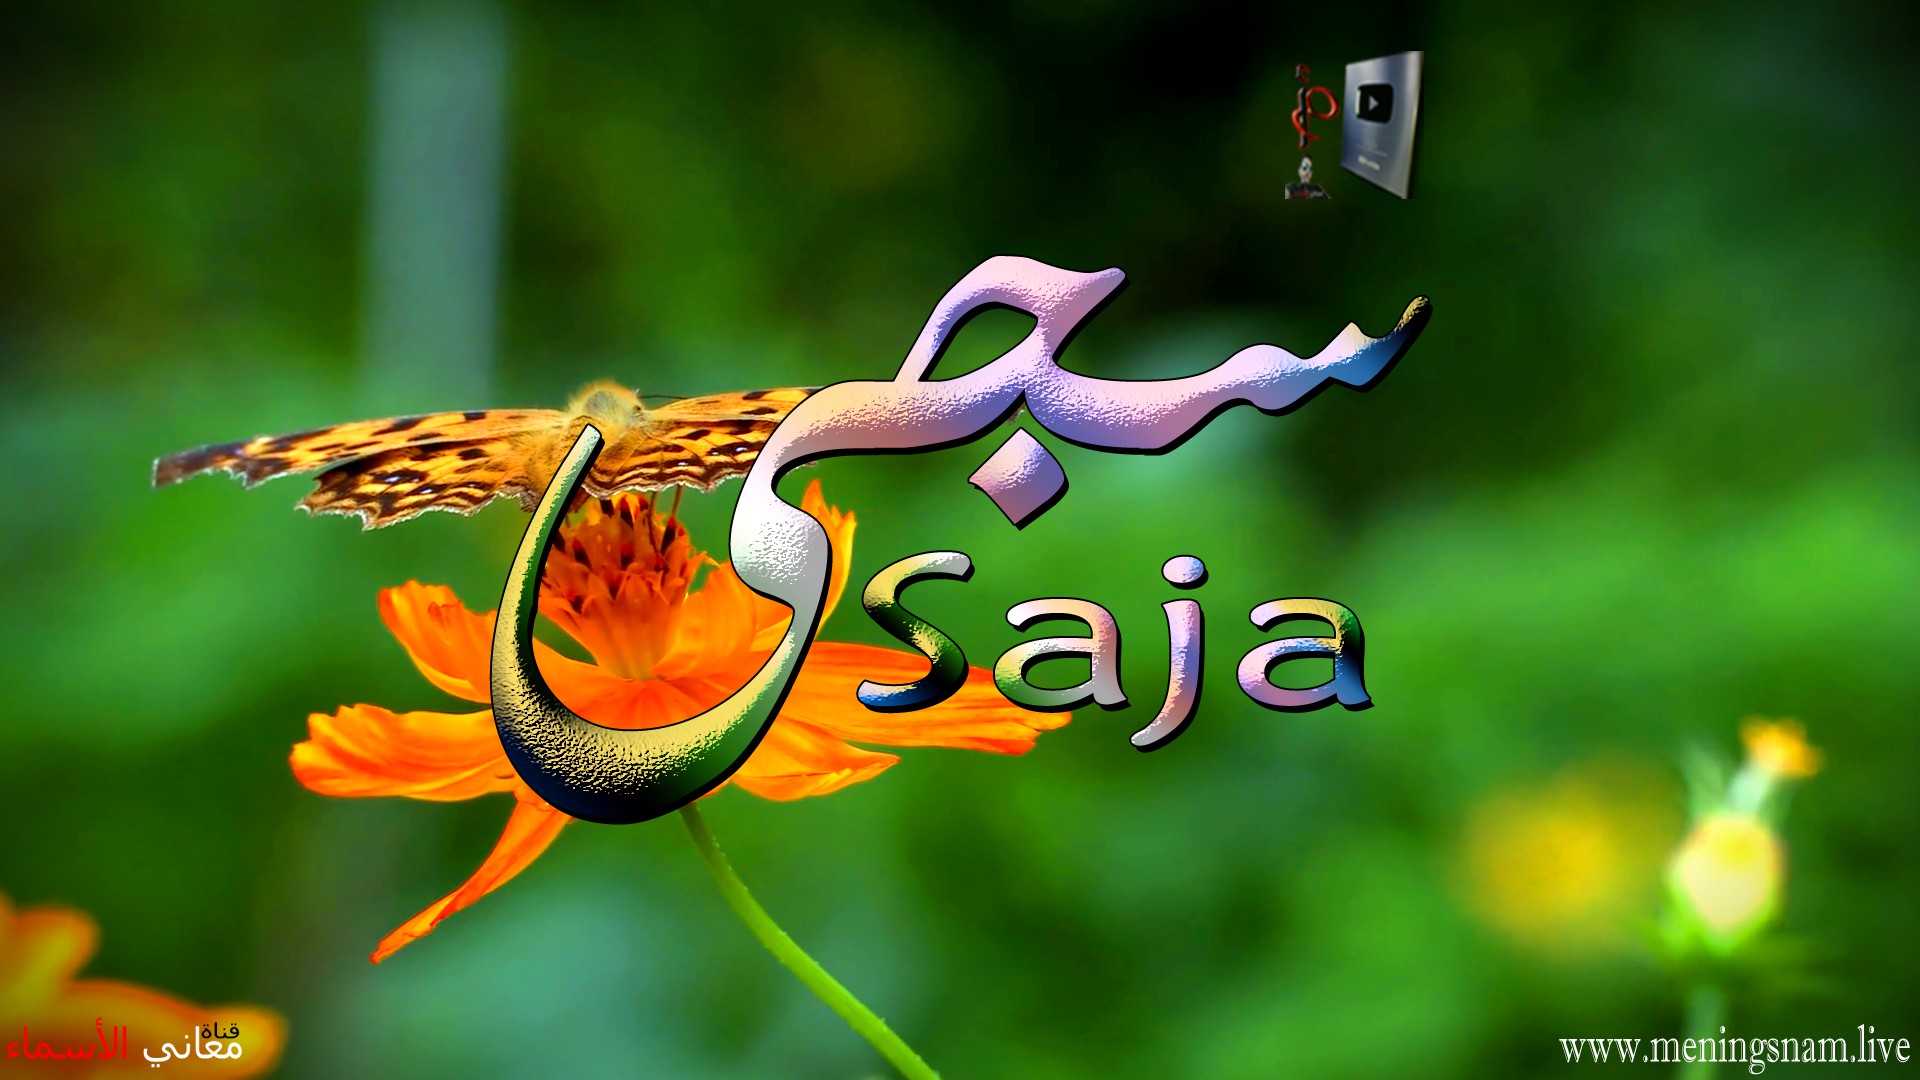 معنى اسم, سجى, وصفات, حاملة, هذا الاسم, Saja,